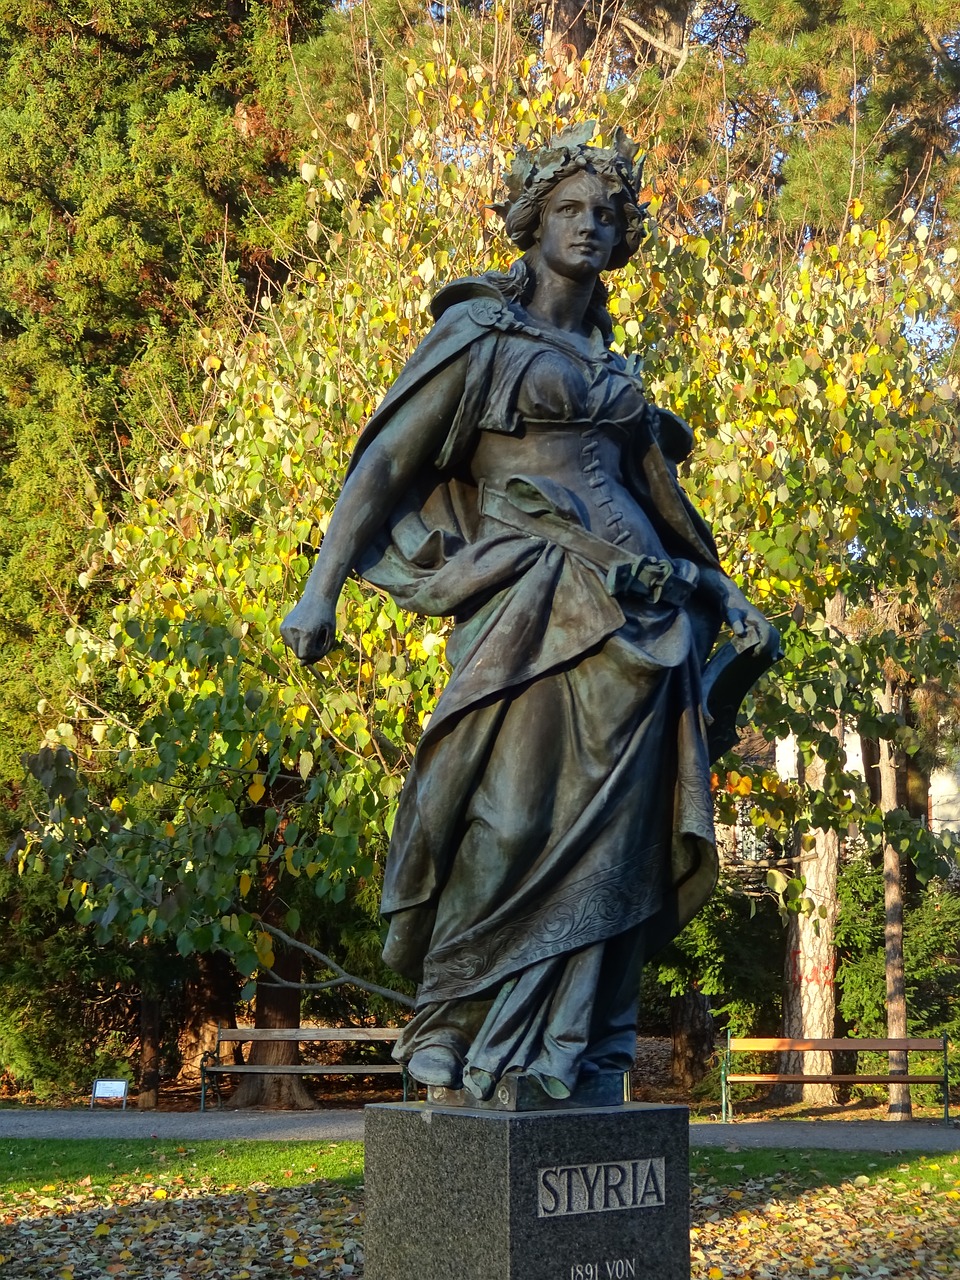 styria  statue  graz free photo